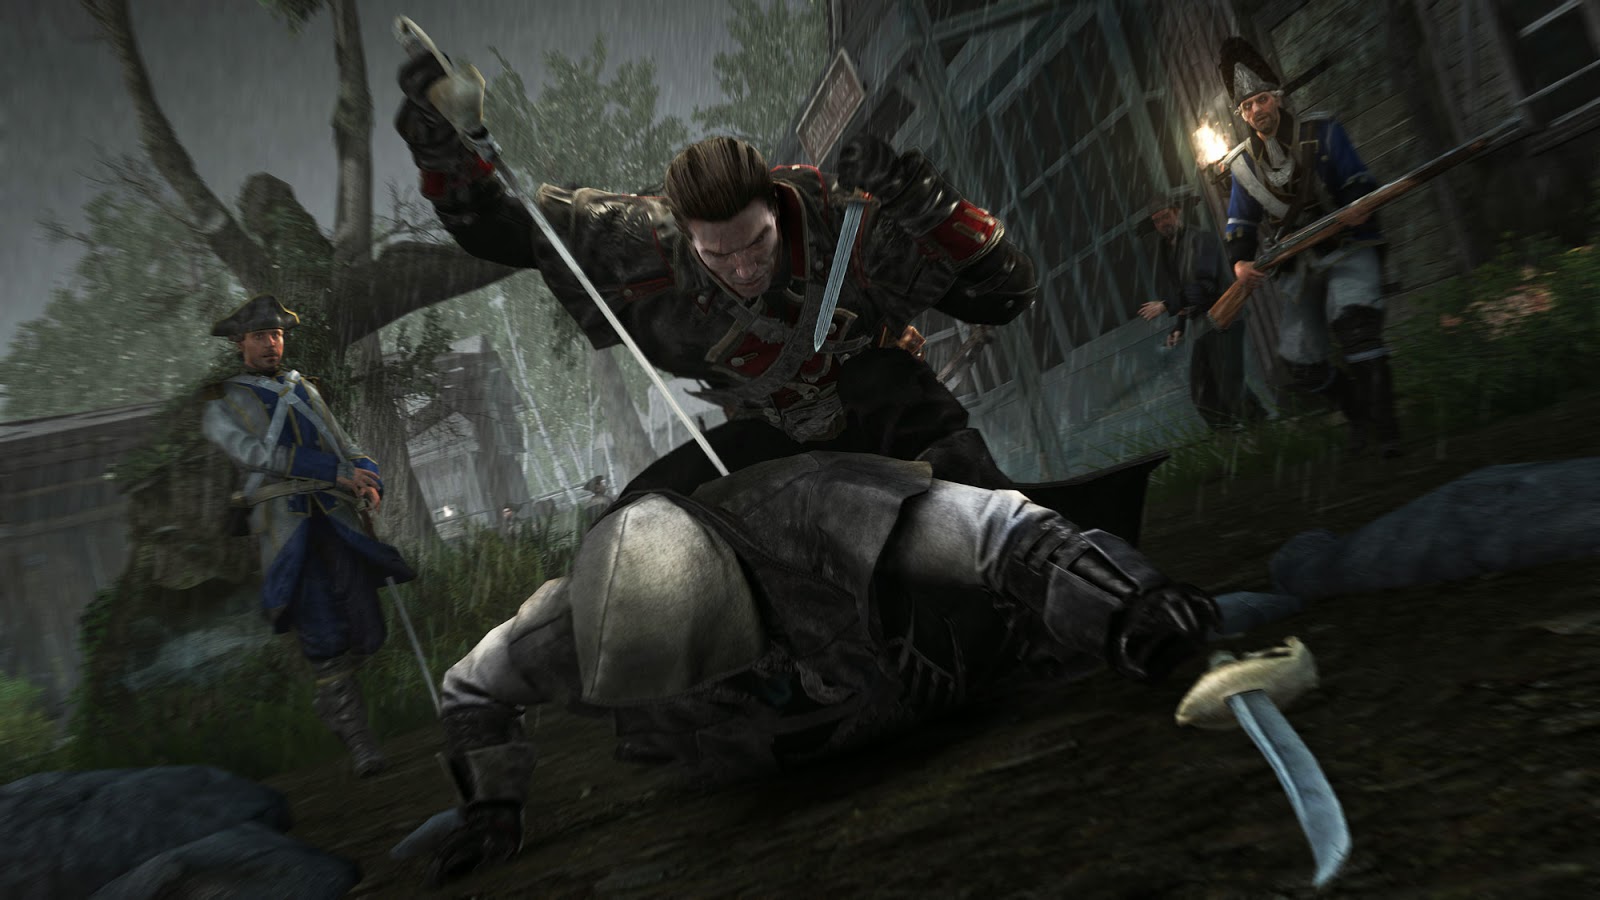 Análise: Assassin's Creed Rogue (PS3/X360) dá a cartada final no pulo para  nova geração - GameBlast